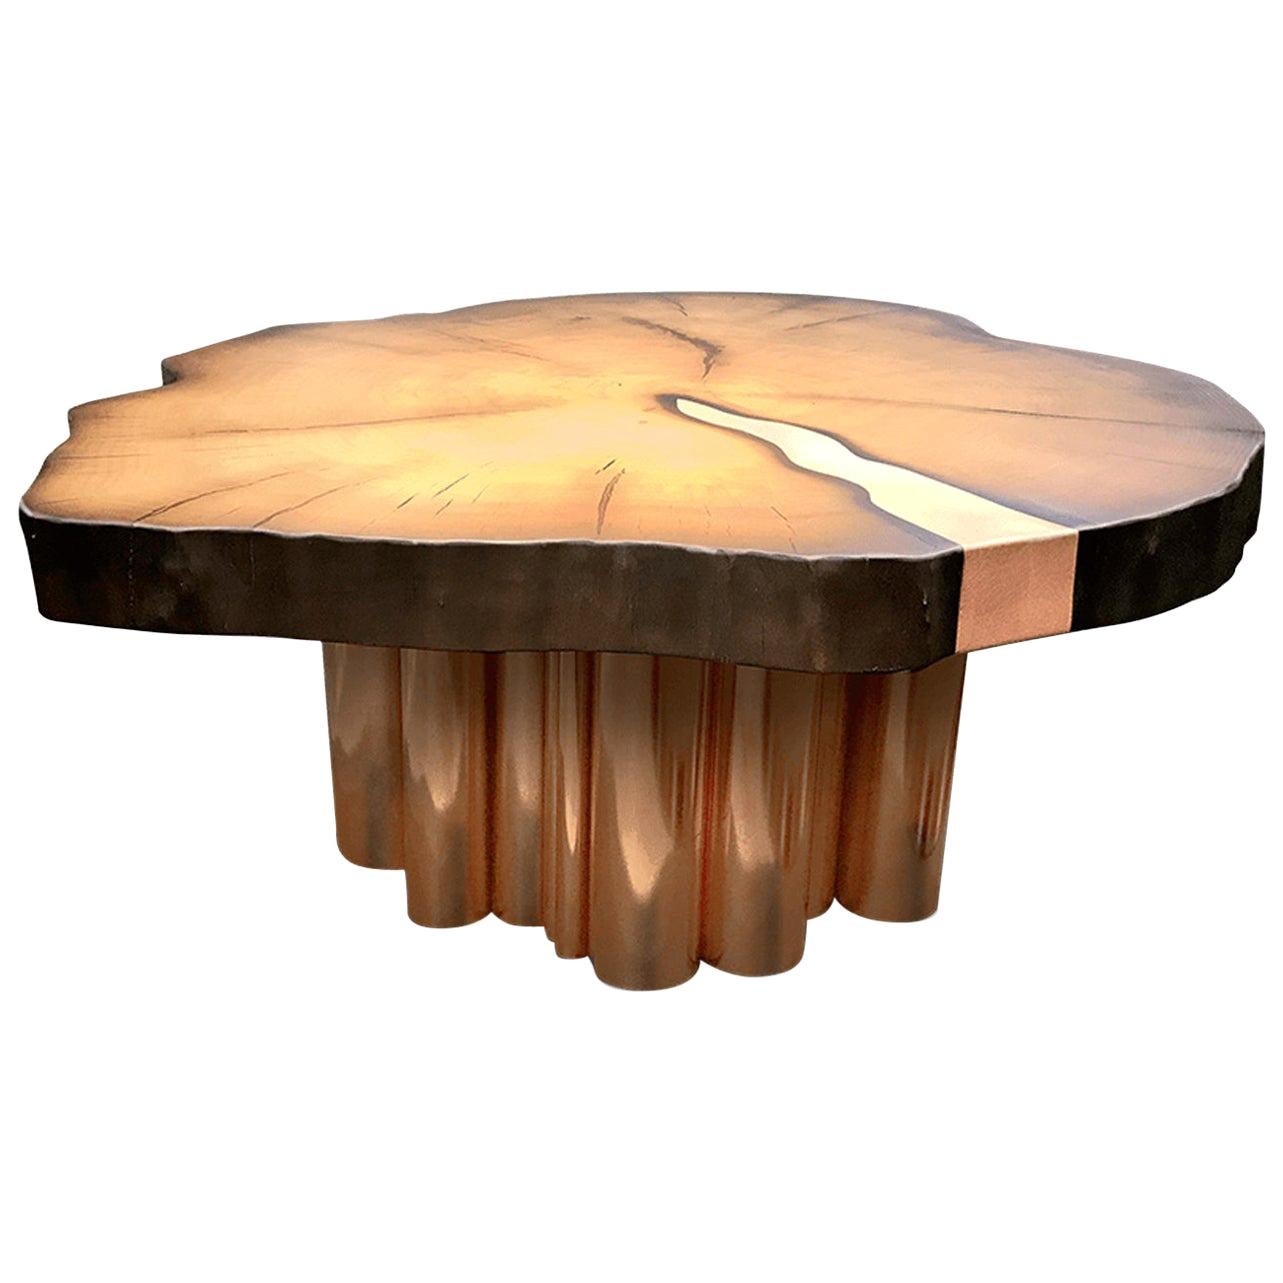 Table basse ronde moderne en bois à bord vif, cuivre ou laiton